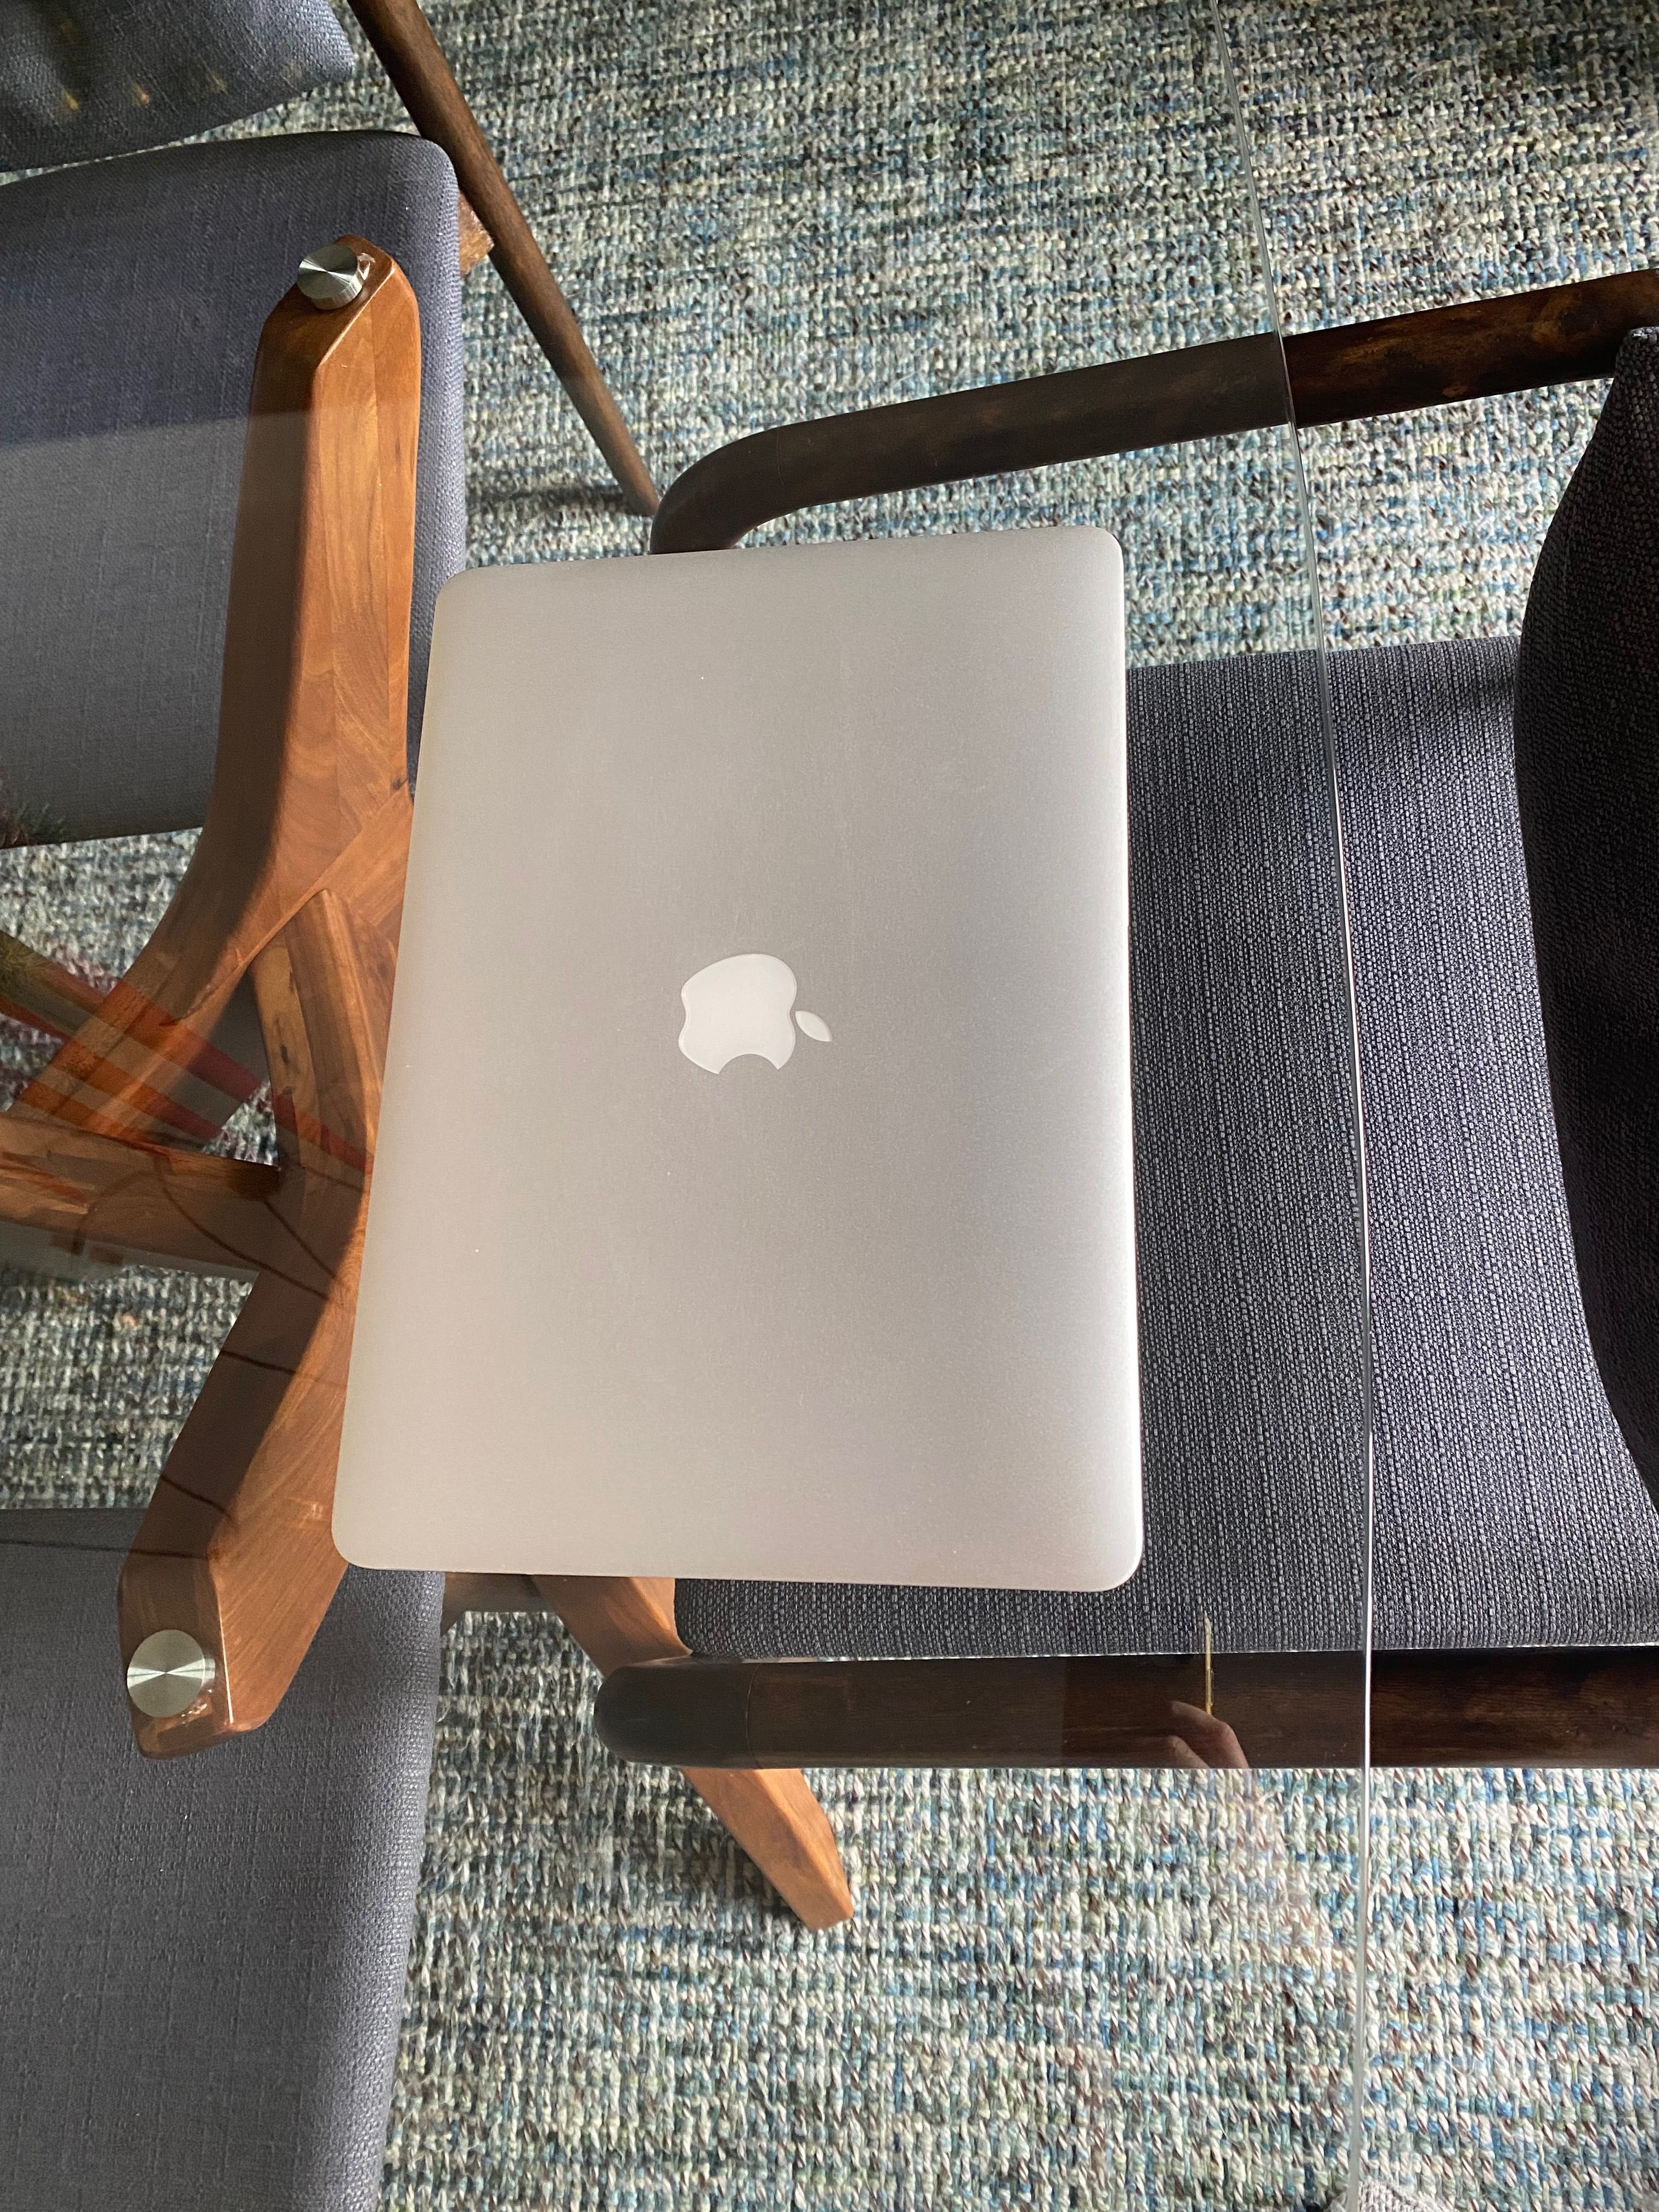 MacBook Air 13”, processador 1,6 GHz, 256GB armazenamento, 4GB memória